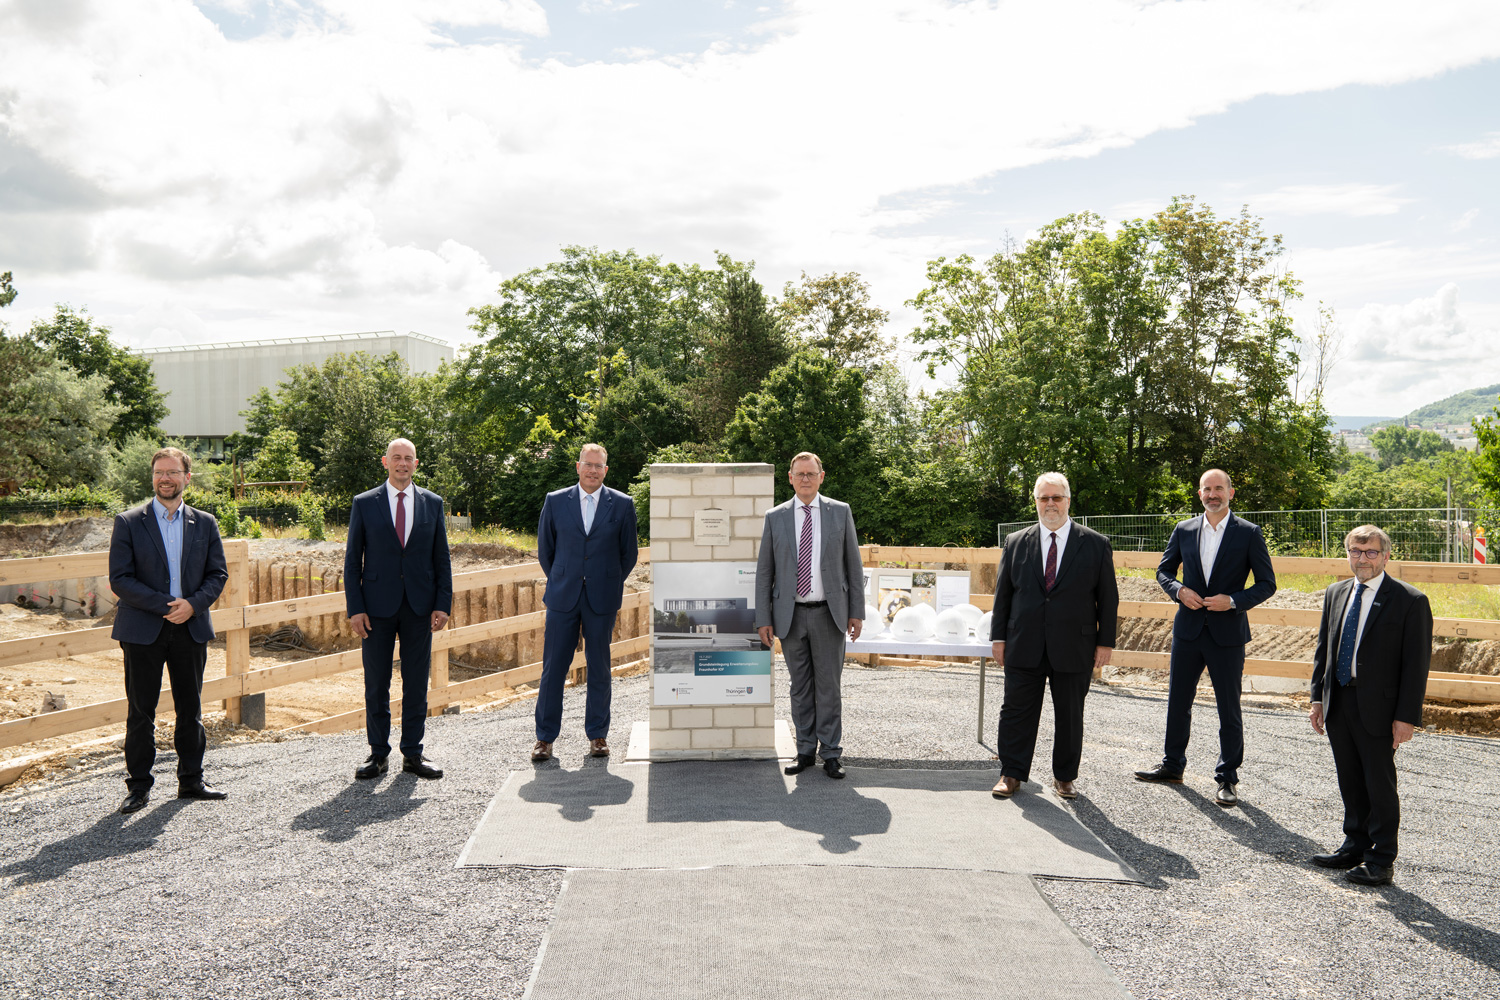 Die genannten sieben Herren stehen neben der Baugrube für das neue Forschungsgebäude am Beutenberg Campus in Jena.